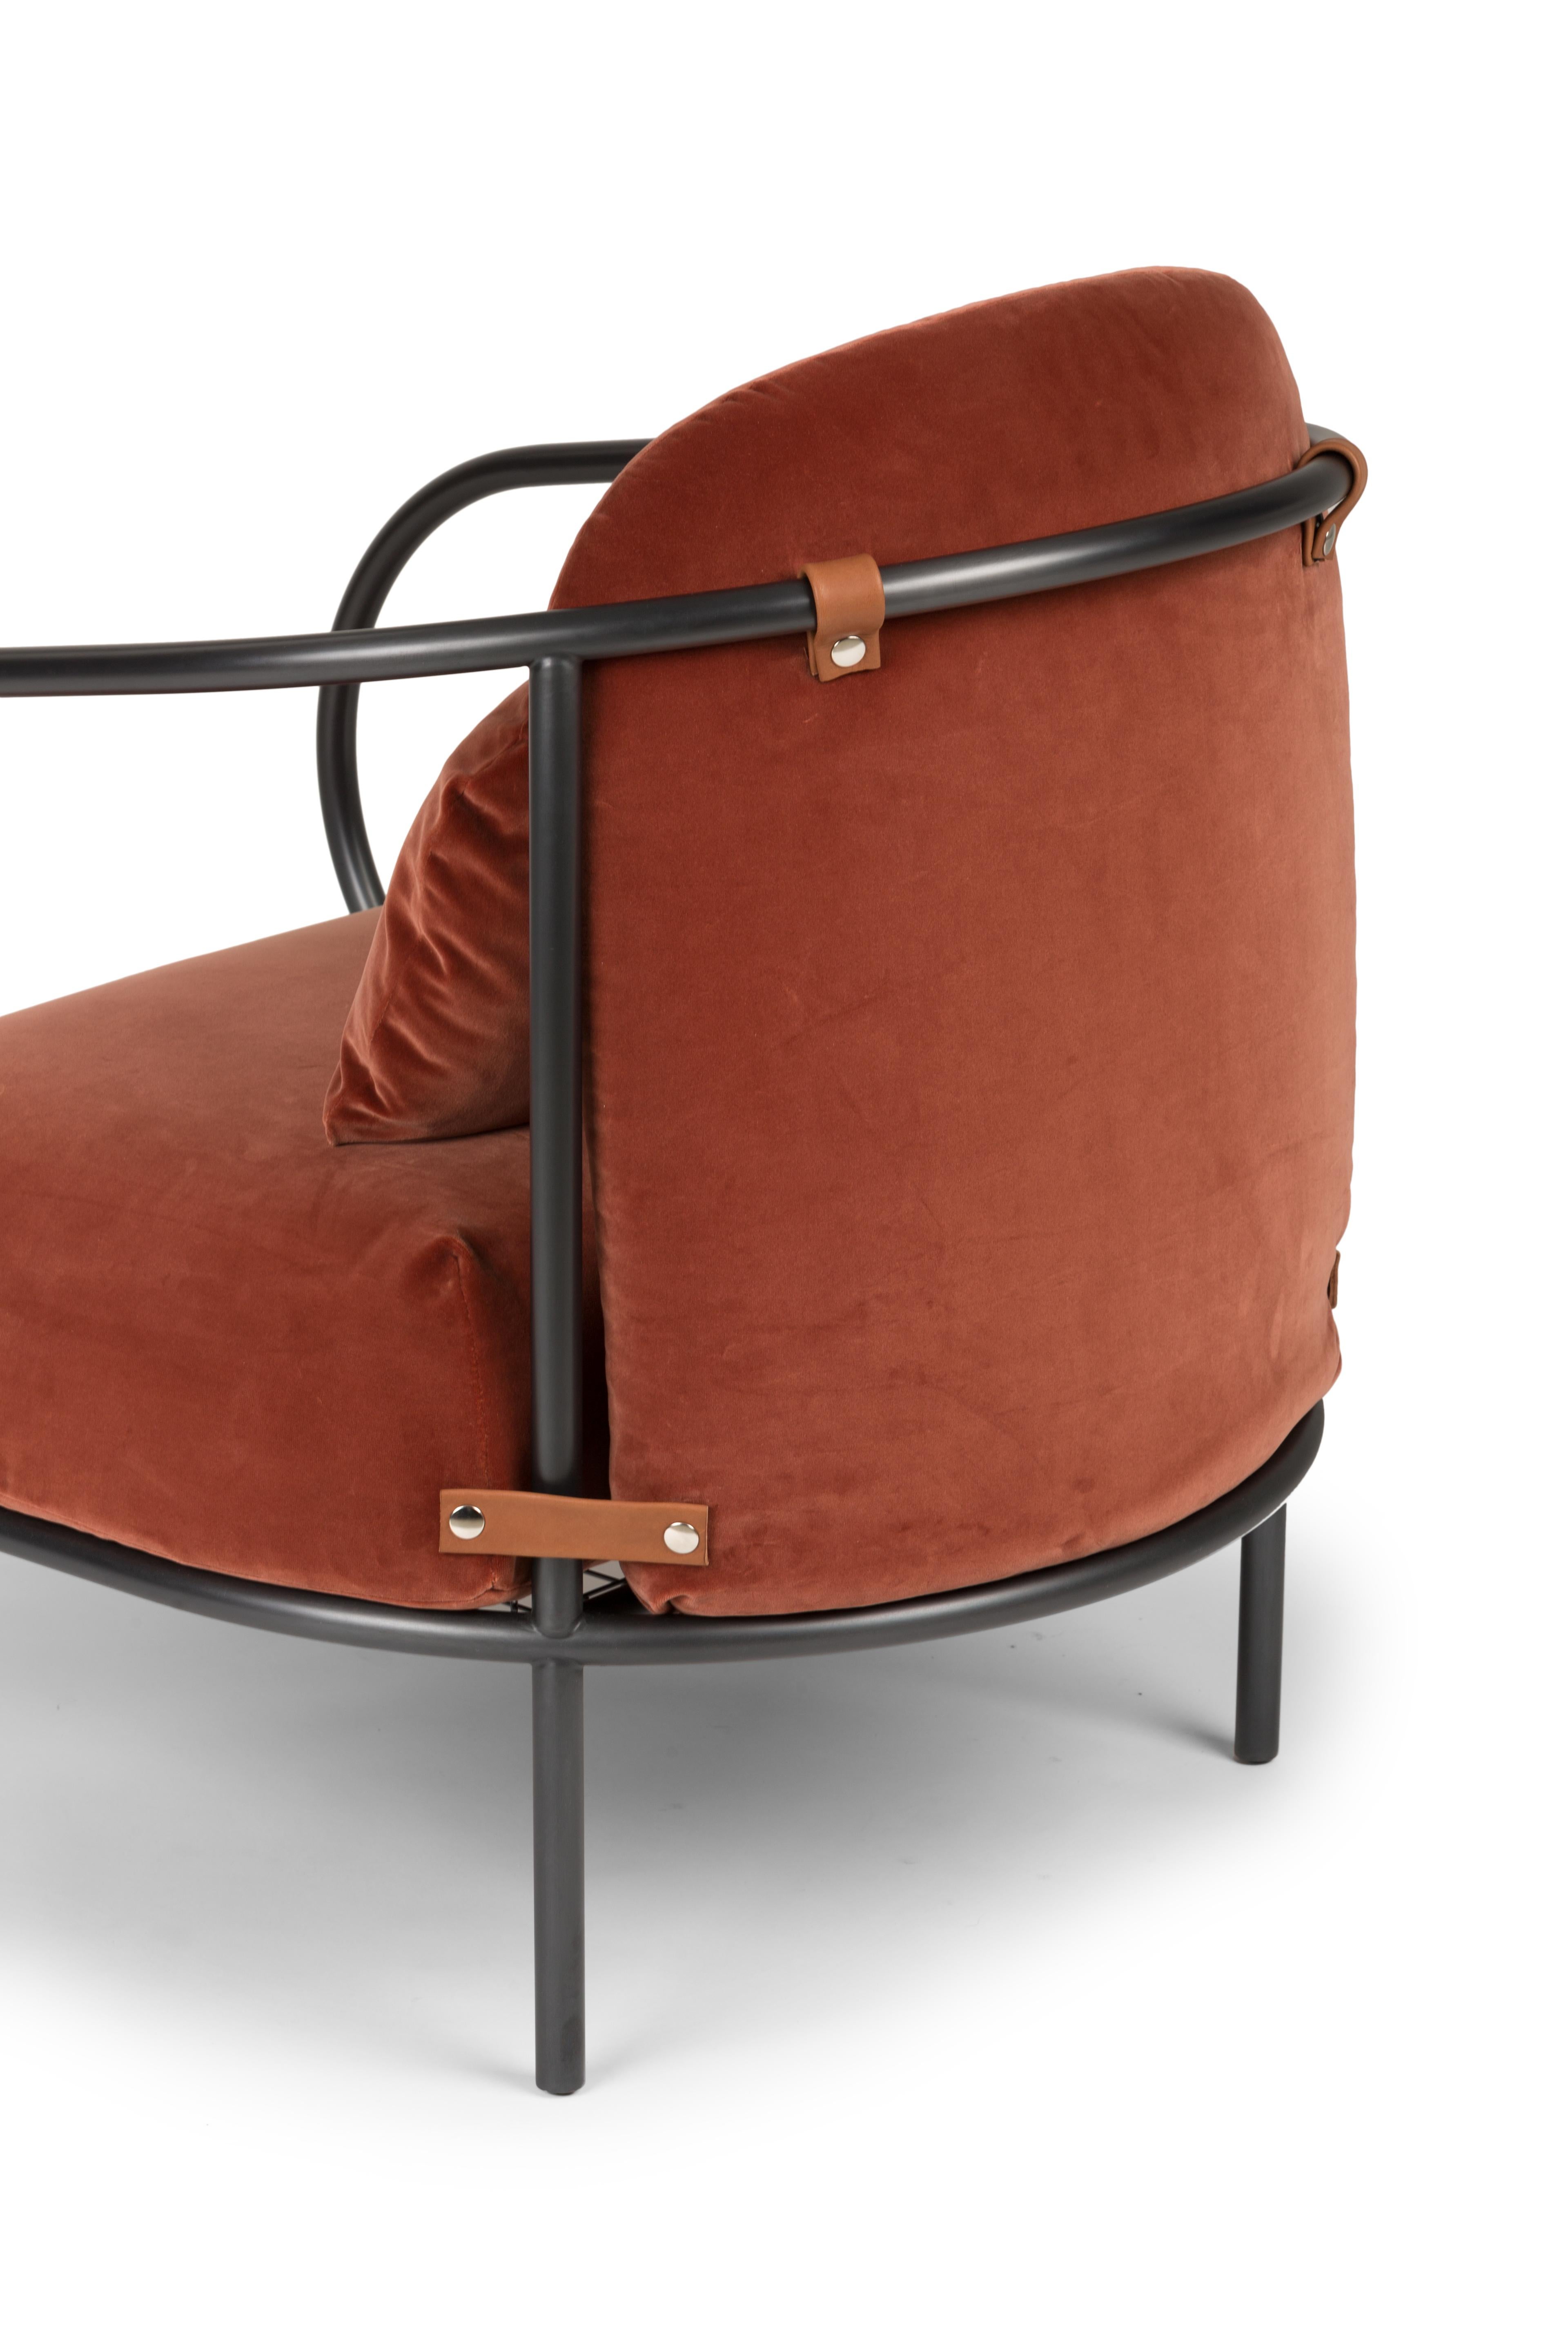 Minima Armchair by Mingardo For Sale 2